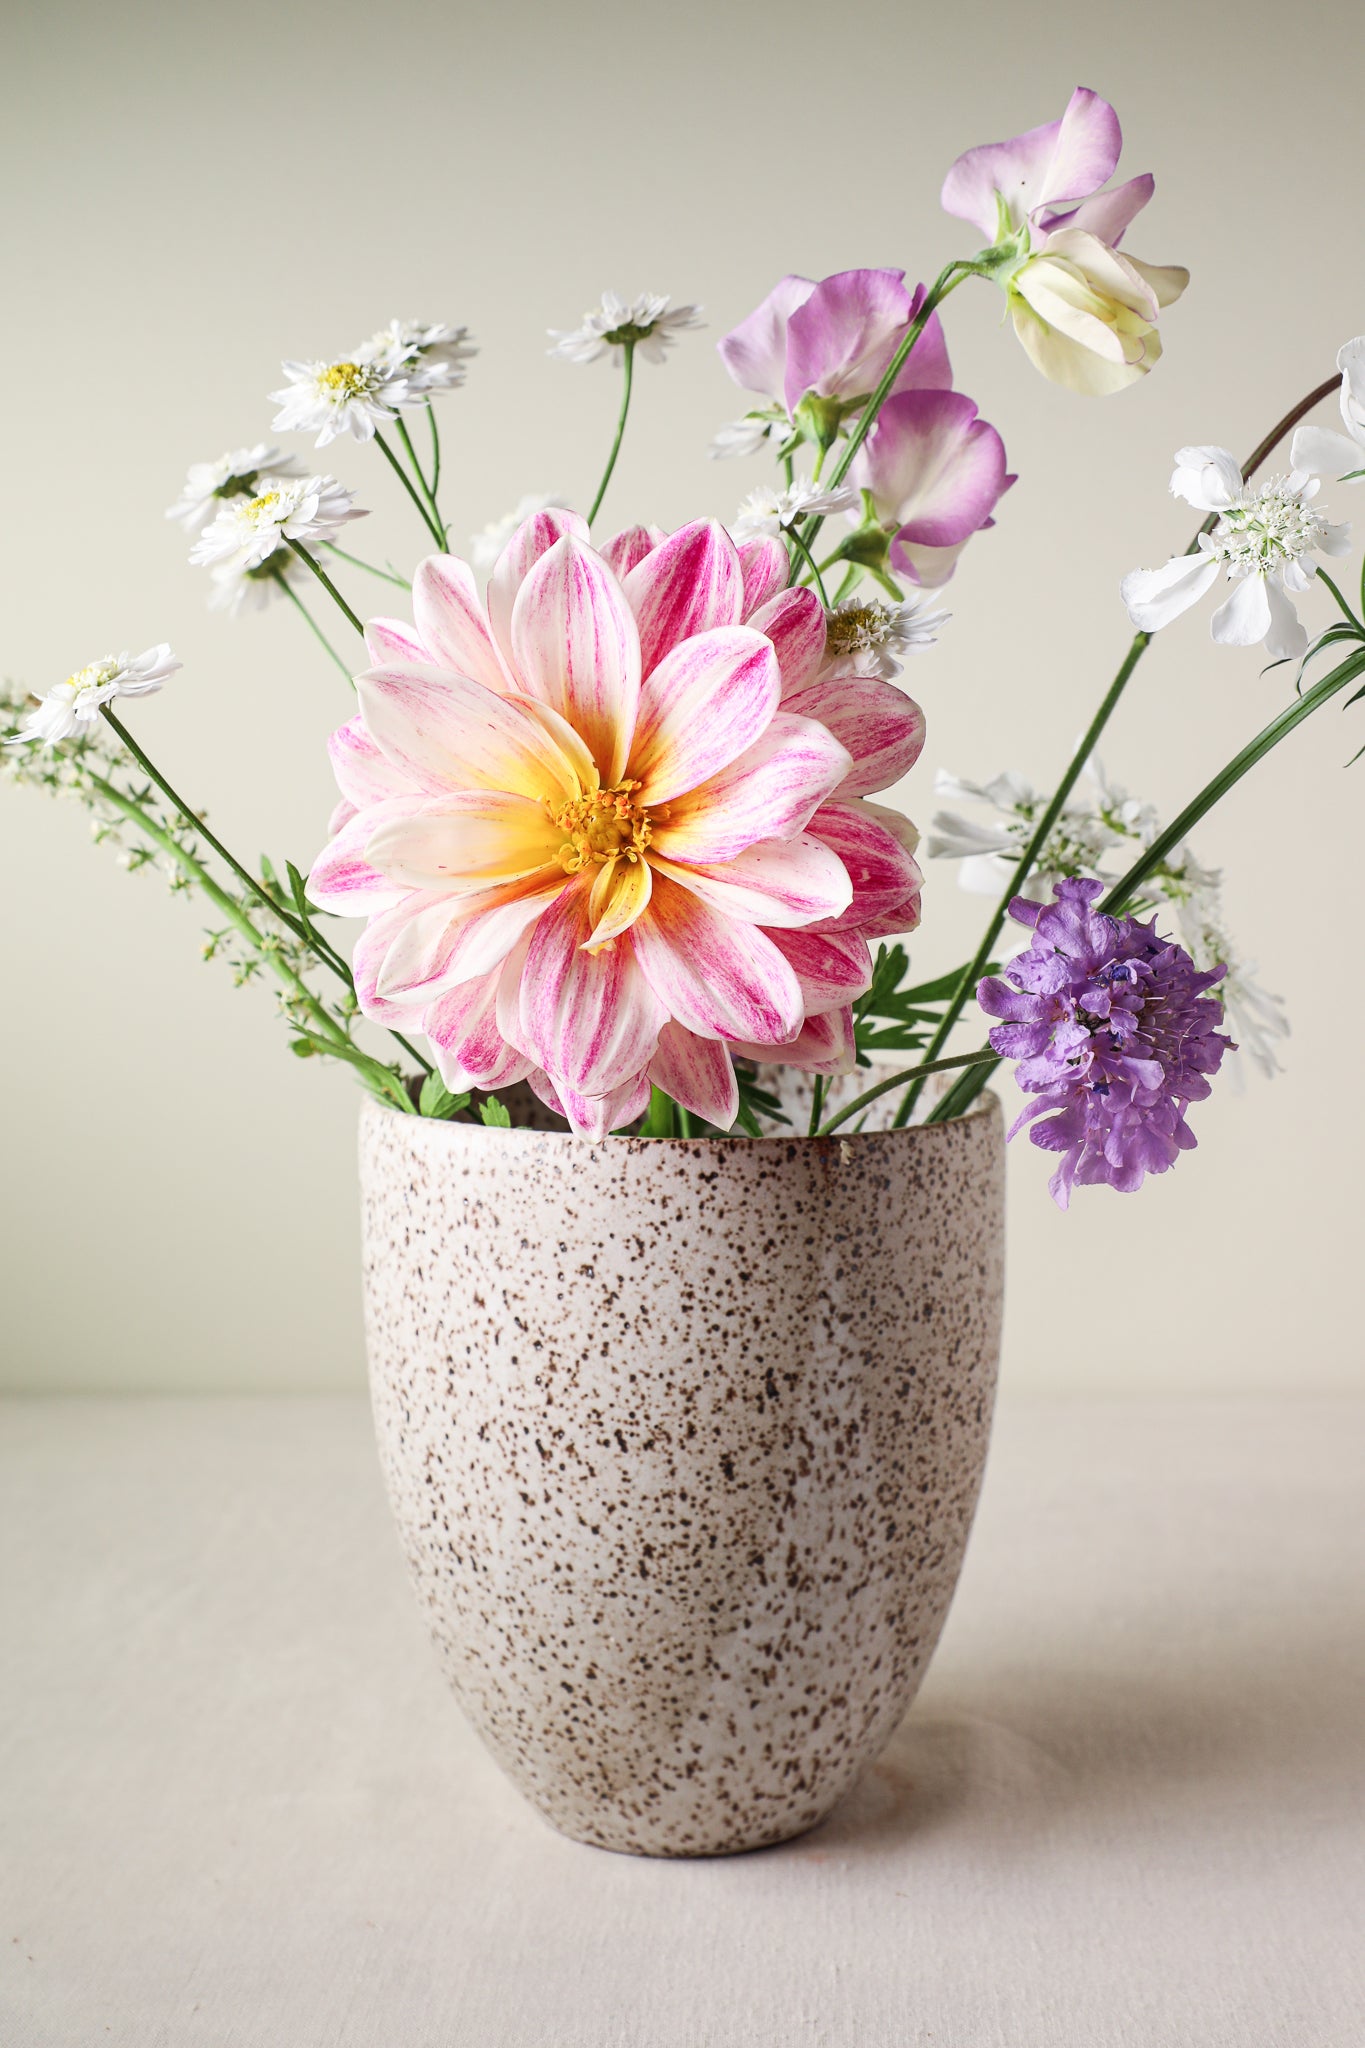 Raw Terracotta Hydrostone – Mary Jane's Flower Vase